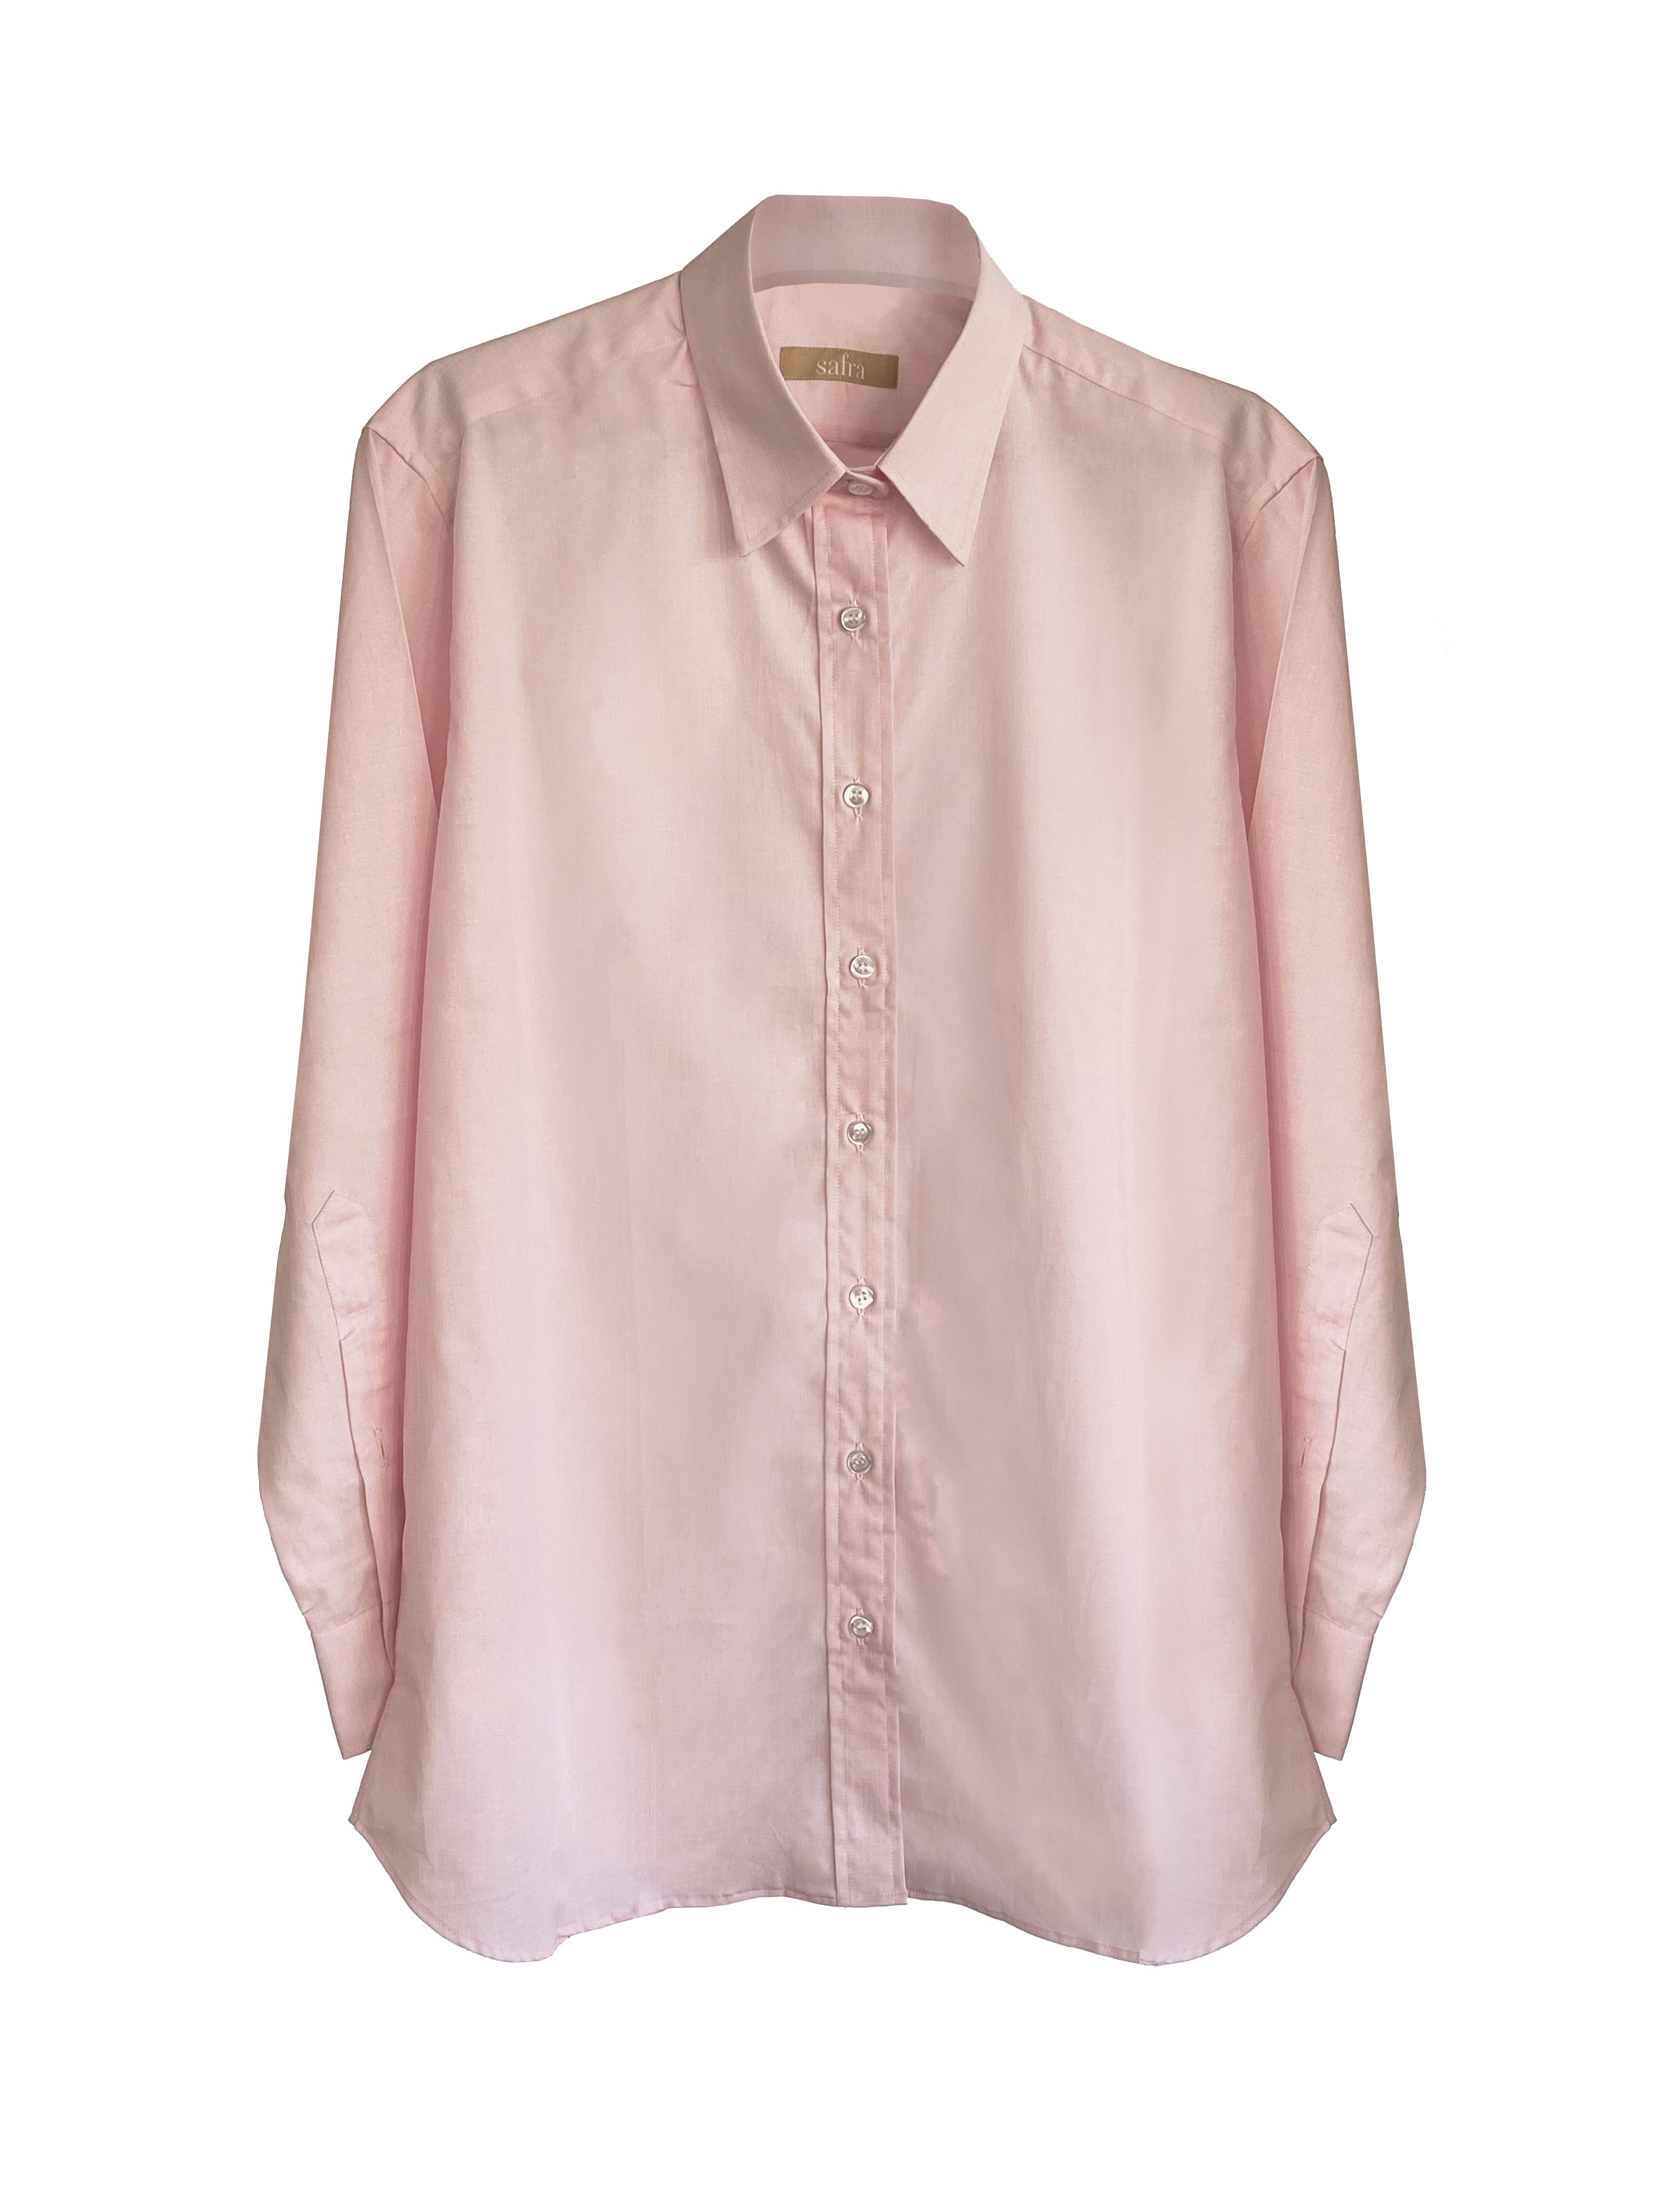 Safra. Camisa Boyfriend (rosa). $9.000.